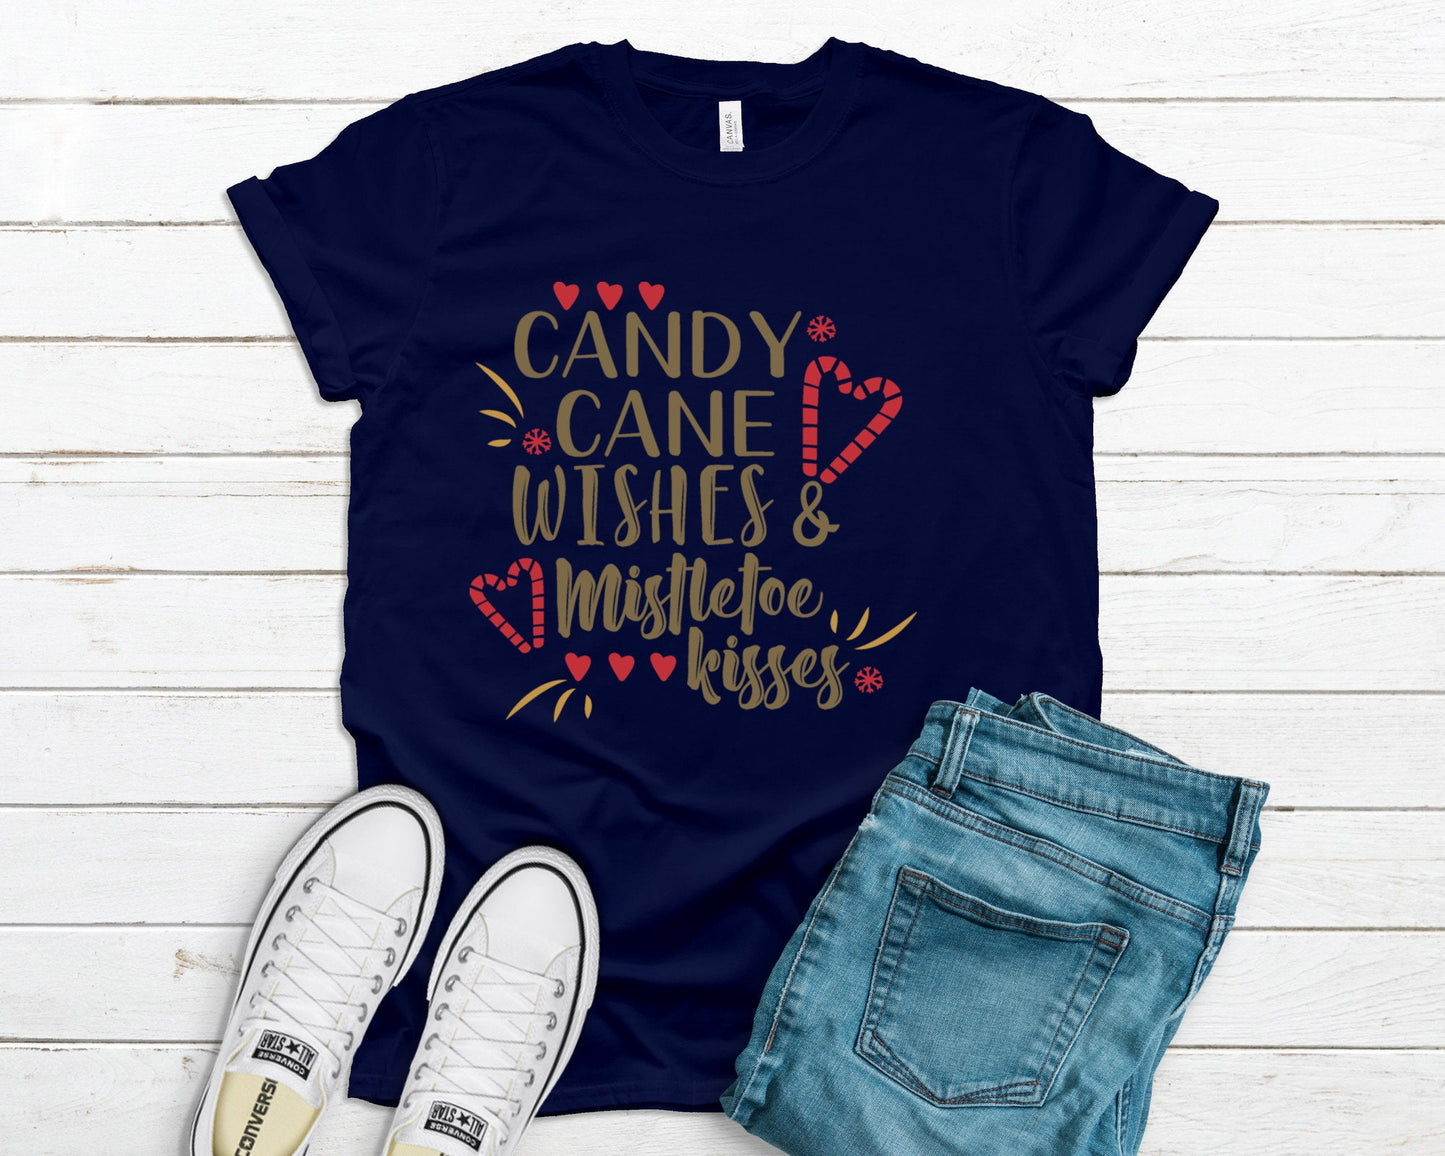 Candy Cane Wishes & Mistletoe Kisses Sweatshirt,  Christmas Tee, Mistletoe, Holiday Sweatshirt, Holiday Tee, Christmas Sweatshirt